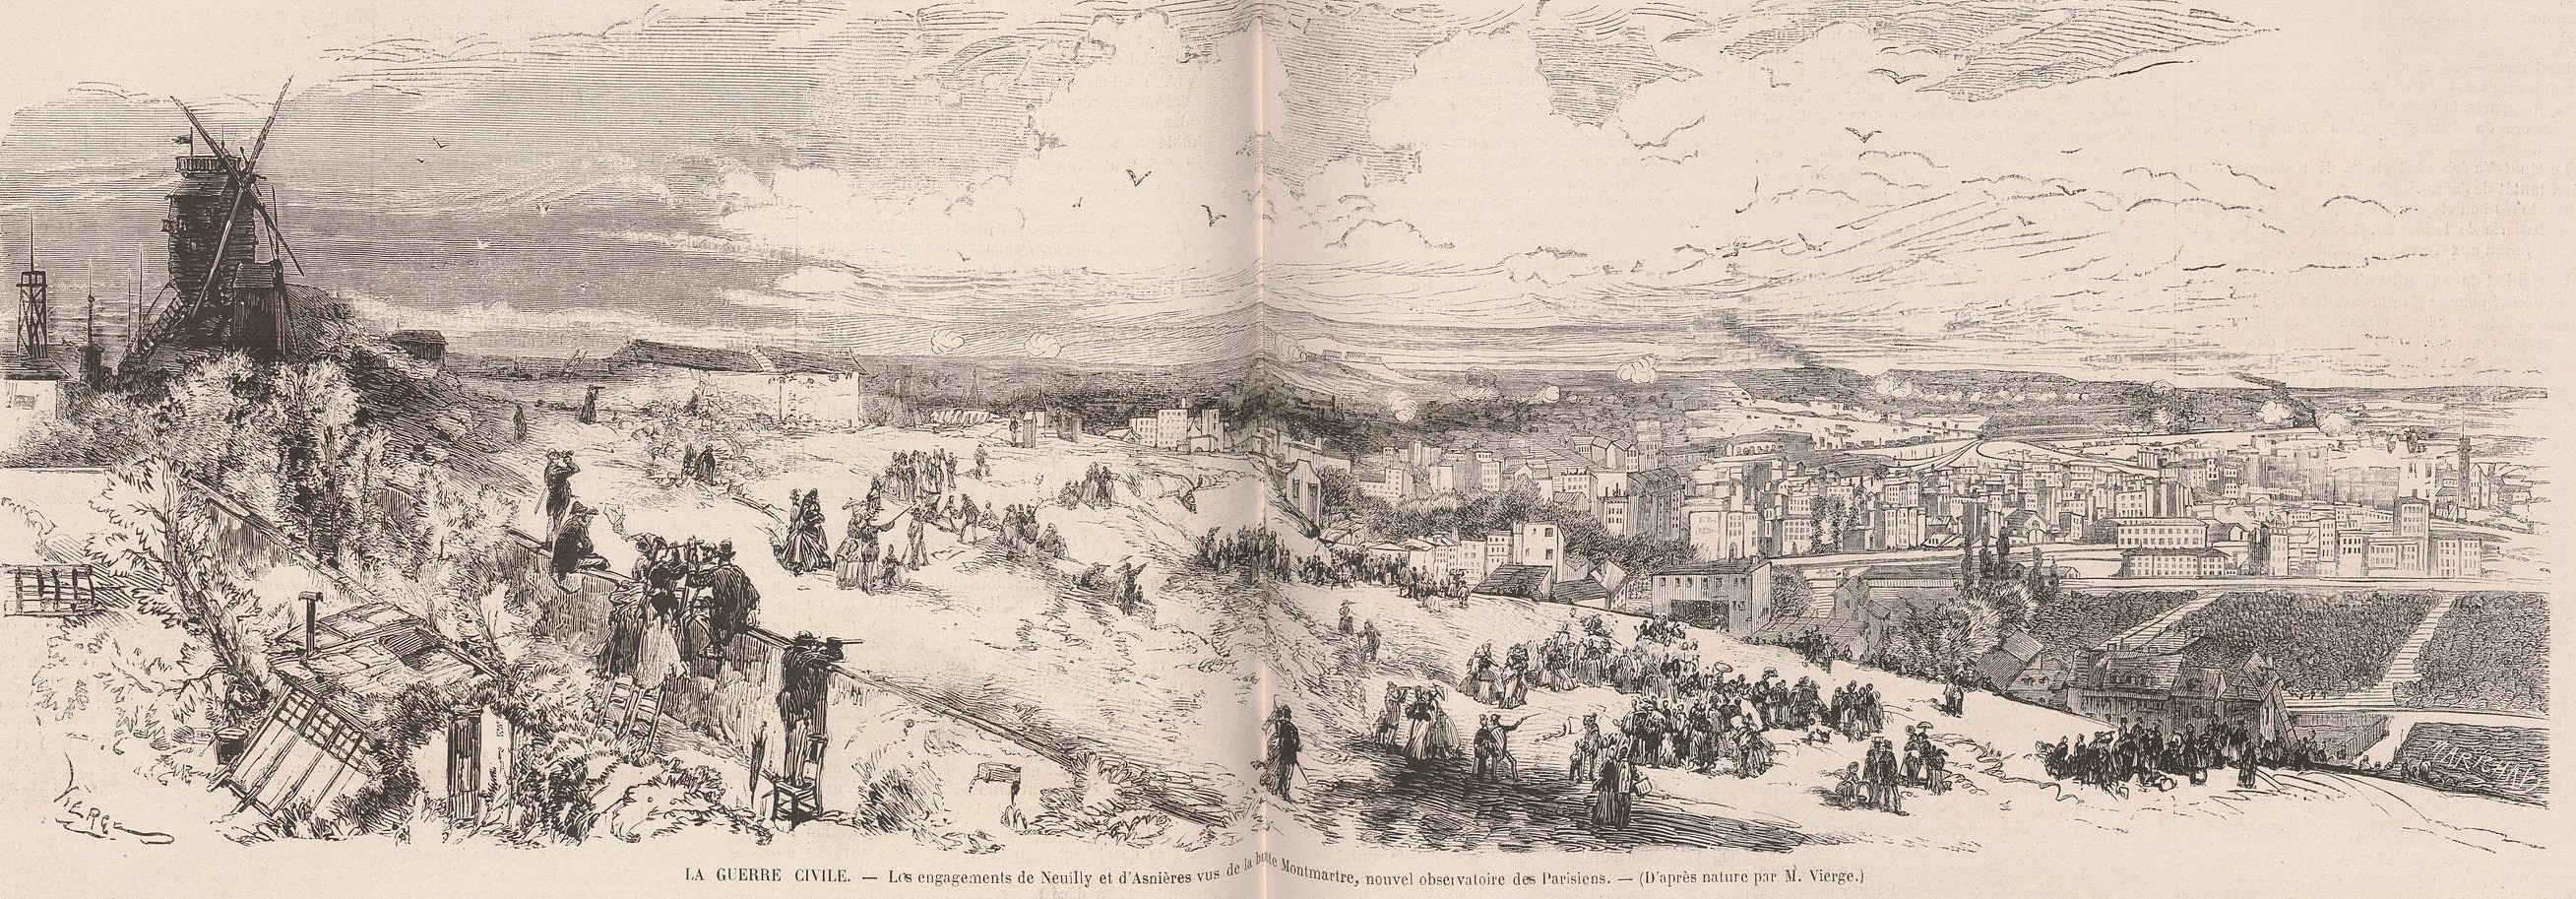 Les engagements de Neuilly et d'Asnières vus de la butte Montmartre, nouvel observatoire des Parisiens (source : Le monde illustré du 22 avril 1871)